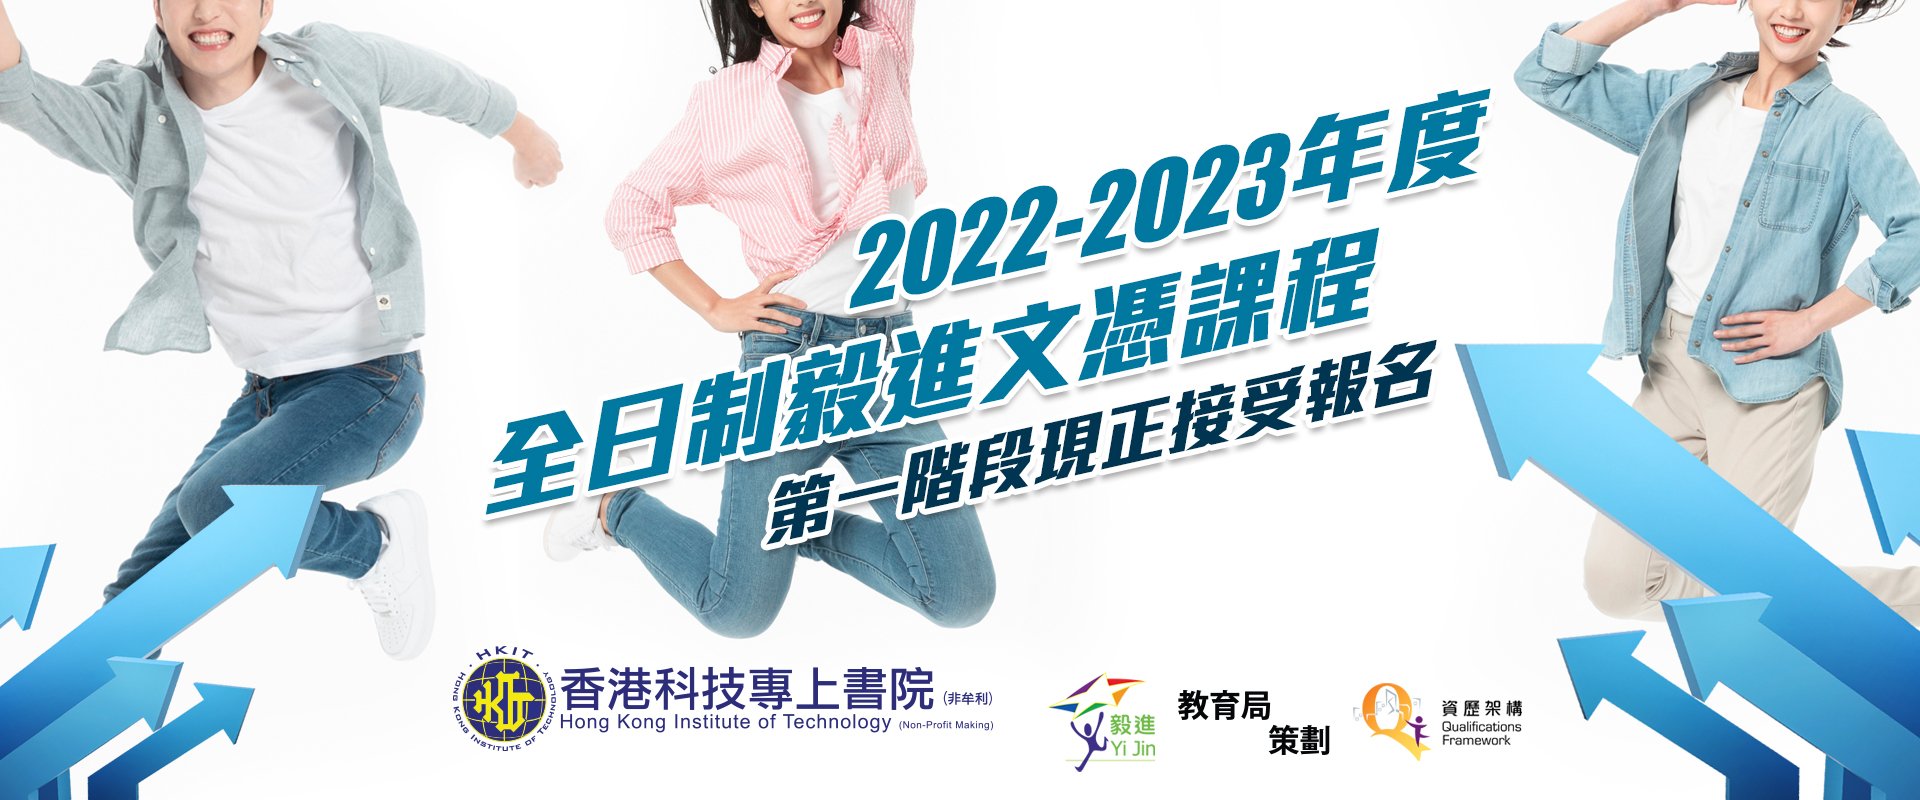 2022-2023年度全日制毅進文憑課程第一階段現正接受報名